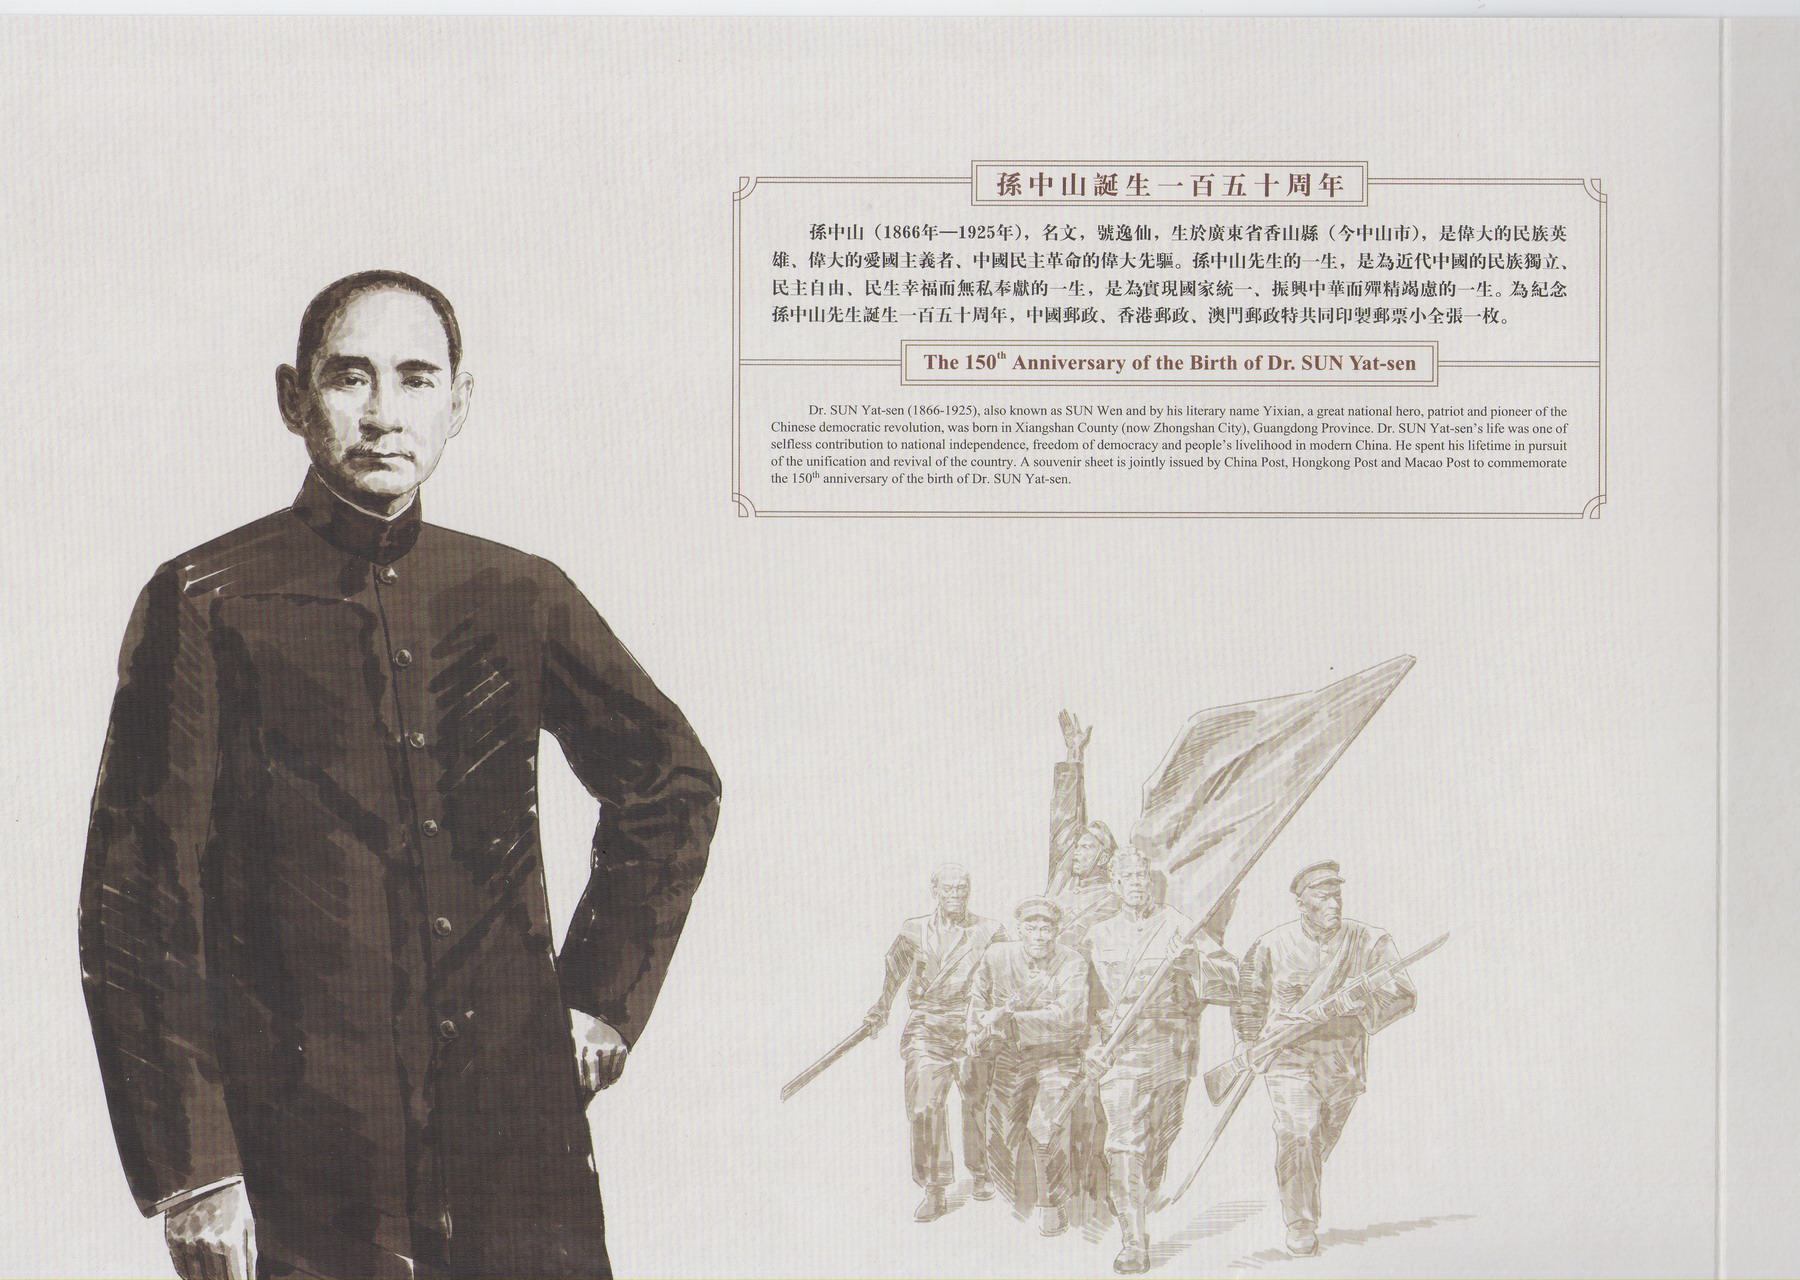 香港孙中山诞生150周年纪念-联合纪念套摺-2-A_resize.jpg